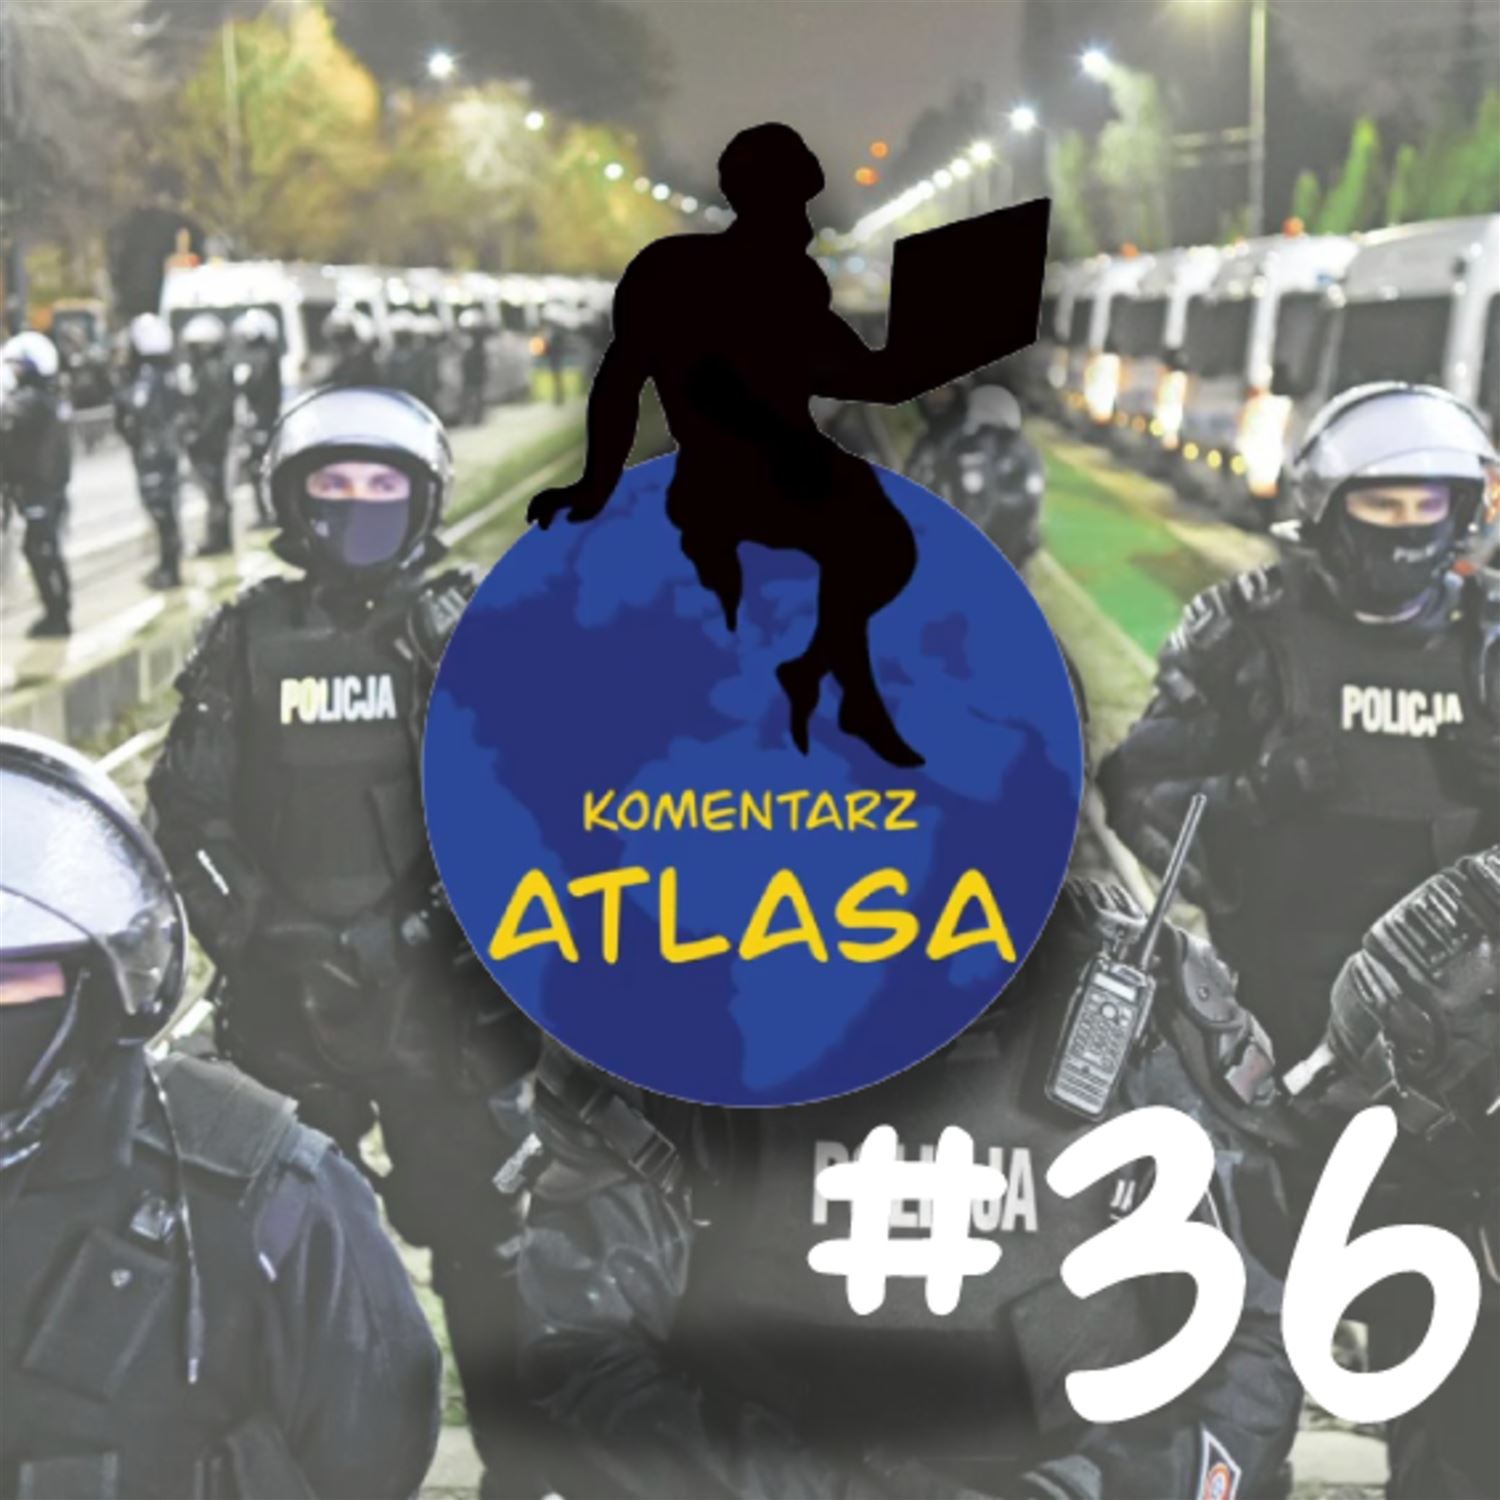 Komentarz Atlasa #36: O policji i Polsce jako państwie TRANZYTOWYM